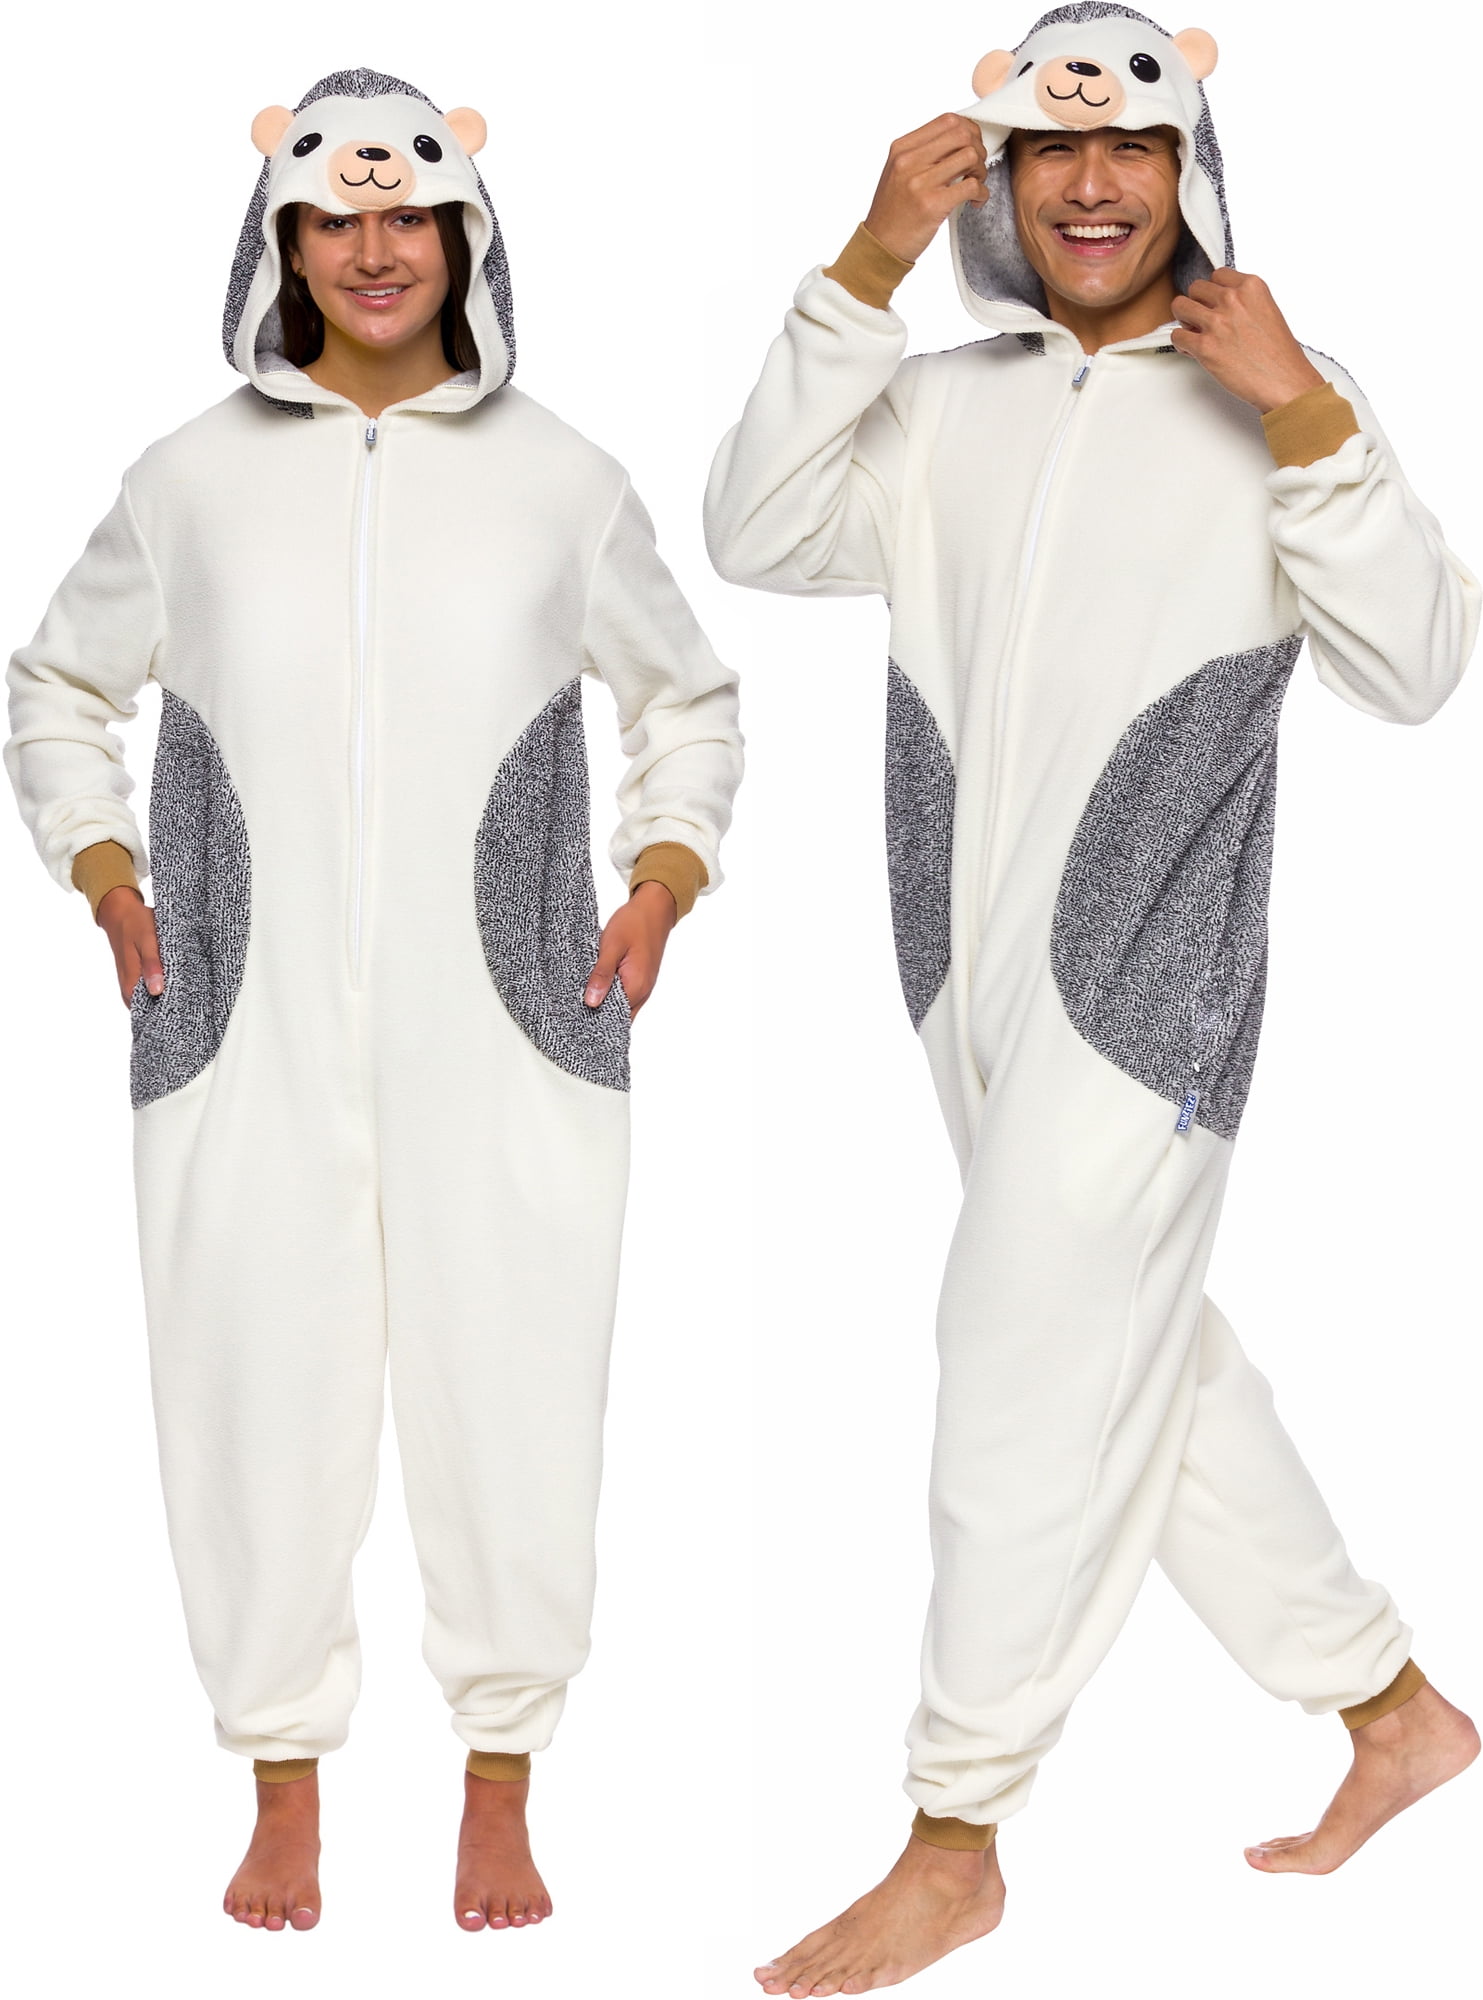 Funziez Adult Plush Novelty Costume Skunk Animal Pajamas 